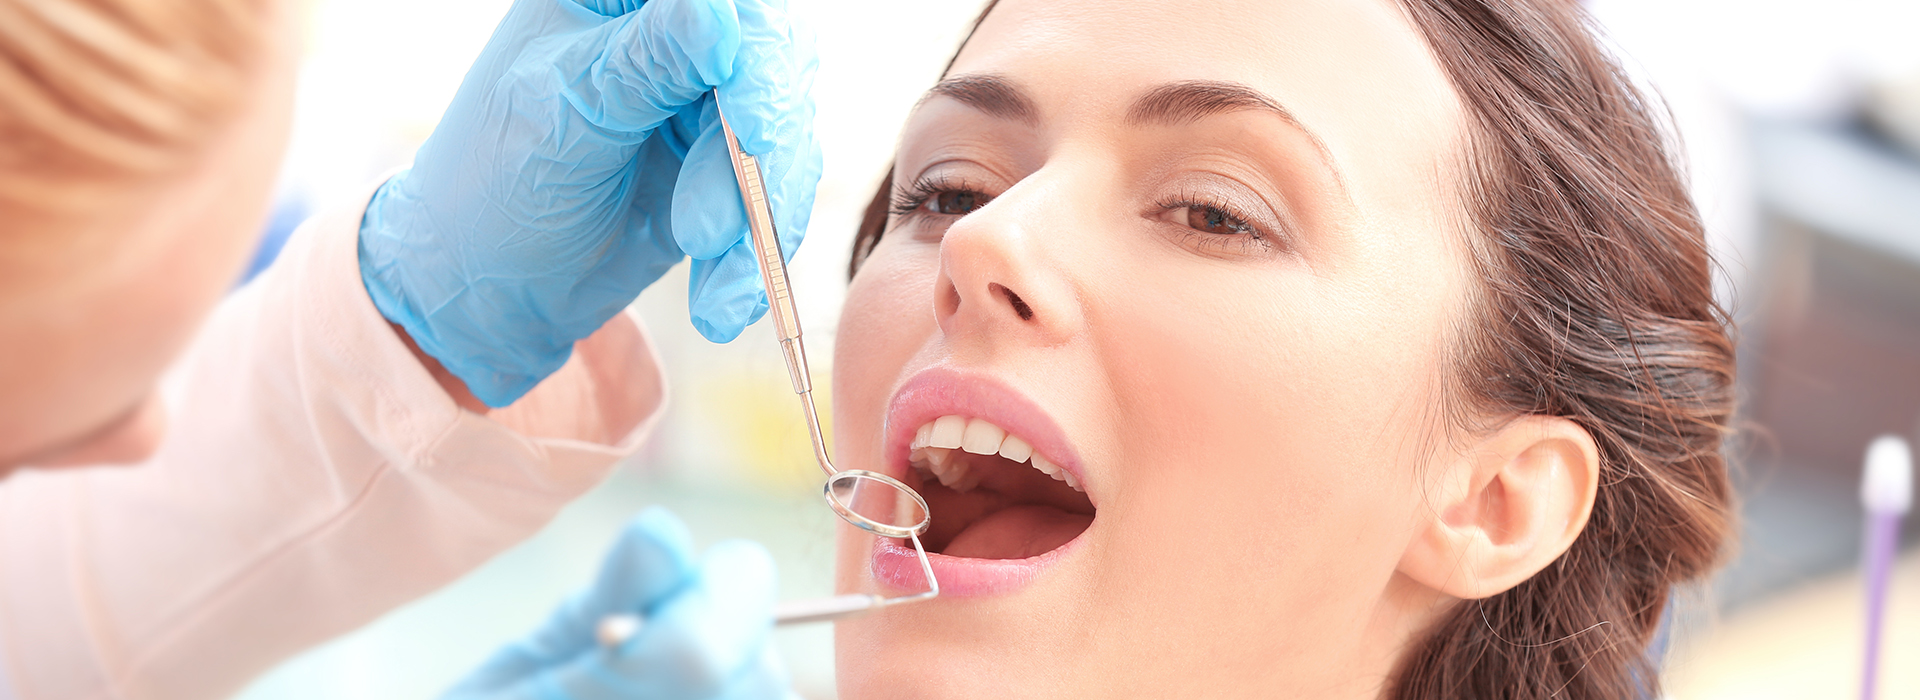 Smile Village Dental Care | Sleep Apnea, Dental Bridges and Sedation Dentistry